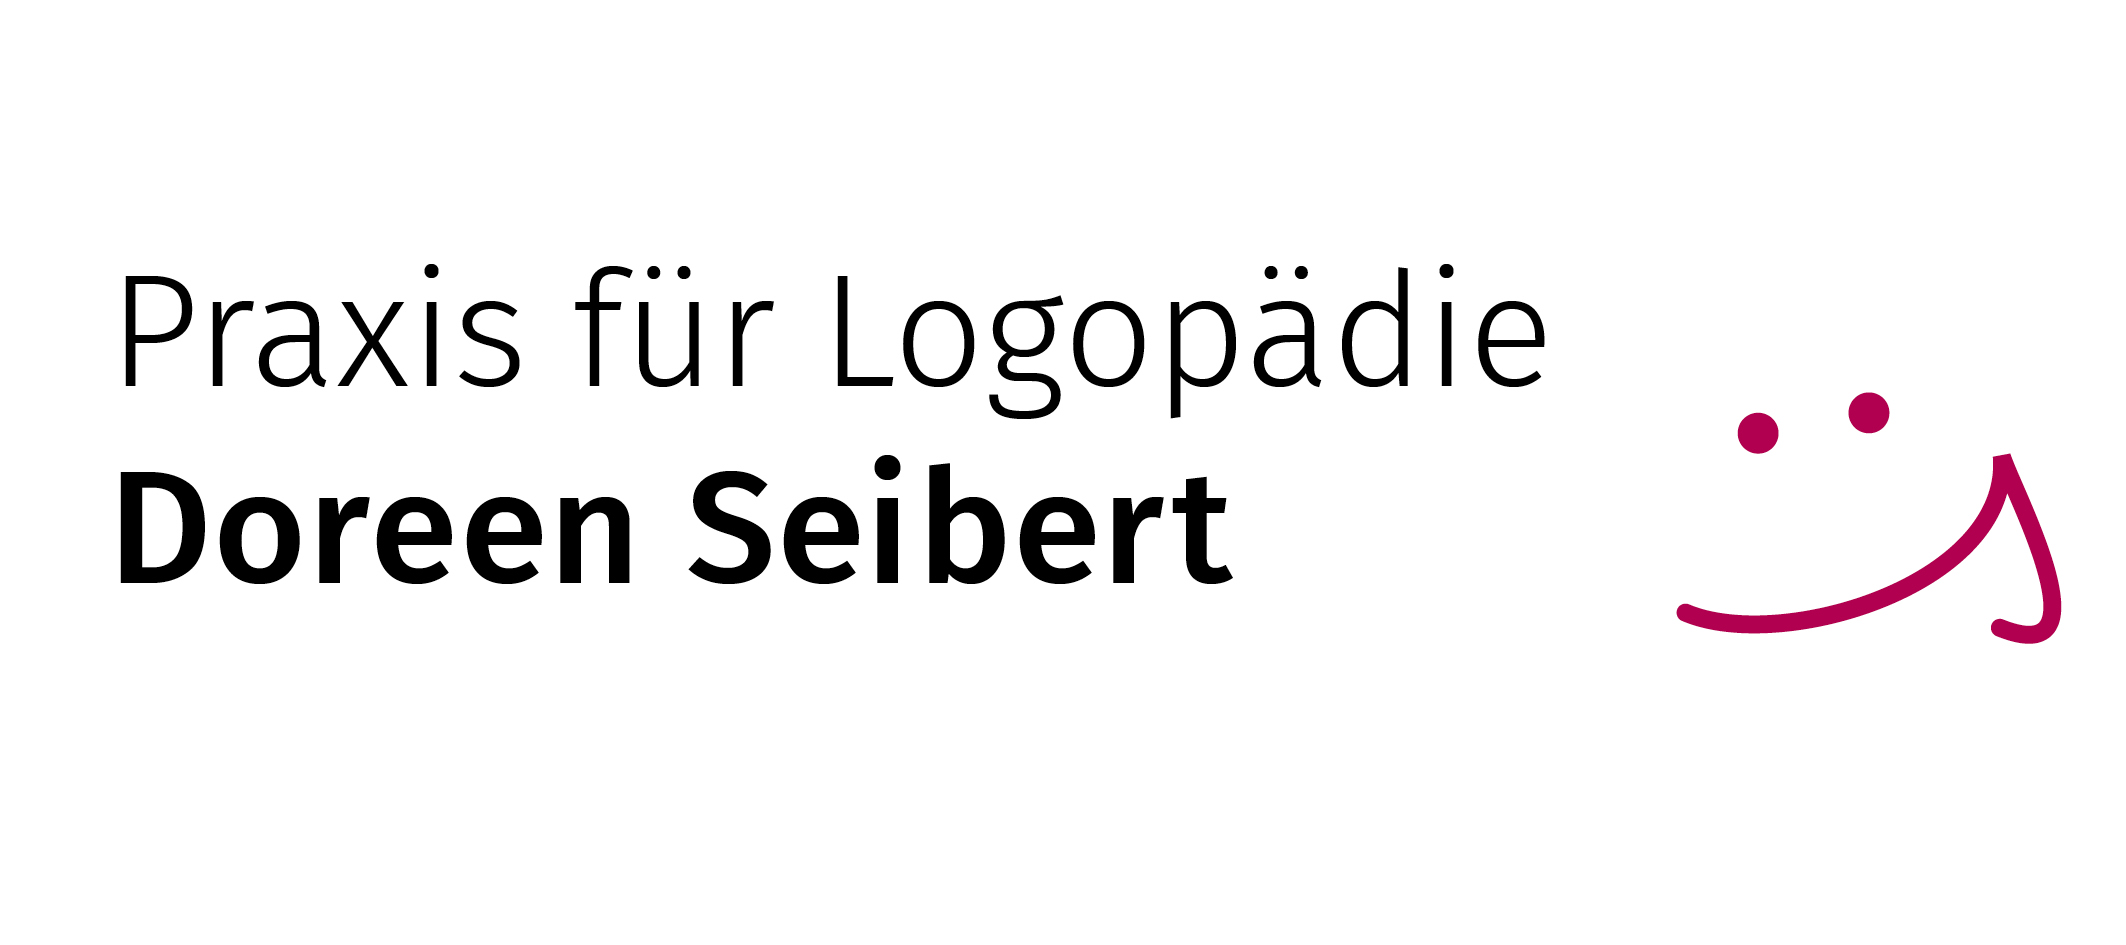 Bild 10 Praxis für Logopädie Doreen Seibert in Zwickau